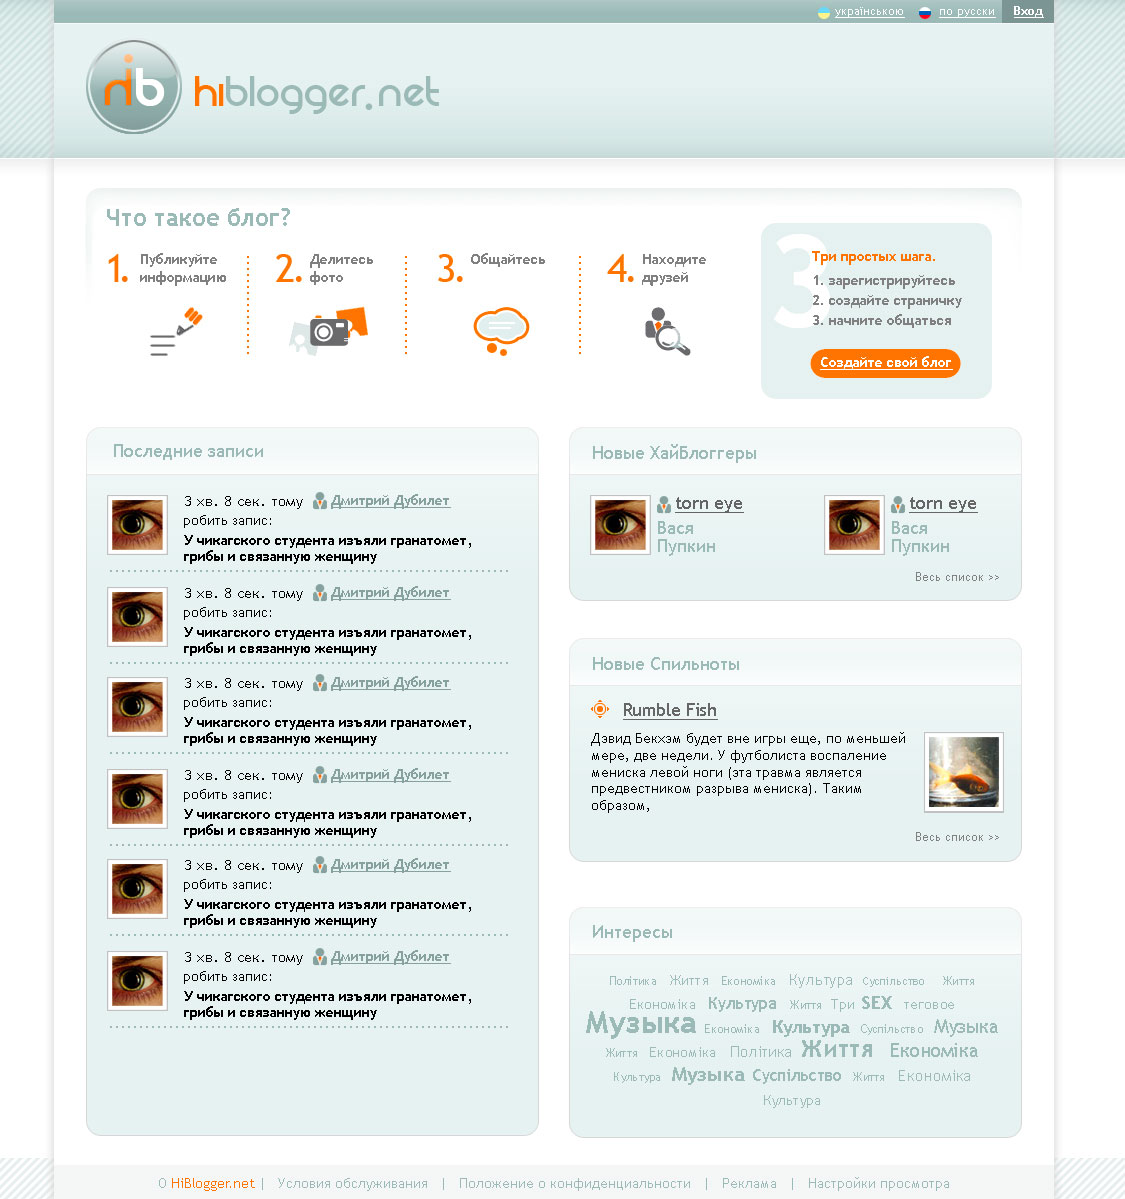 Hiblogger.net